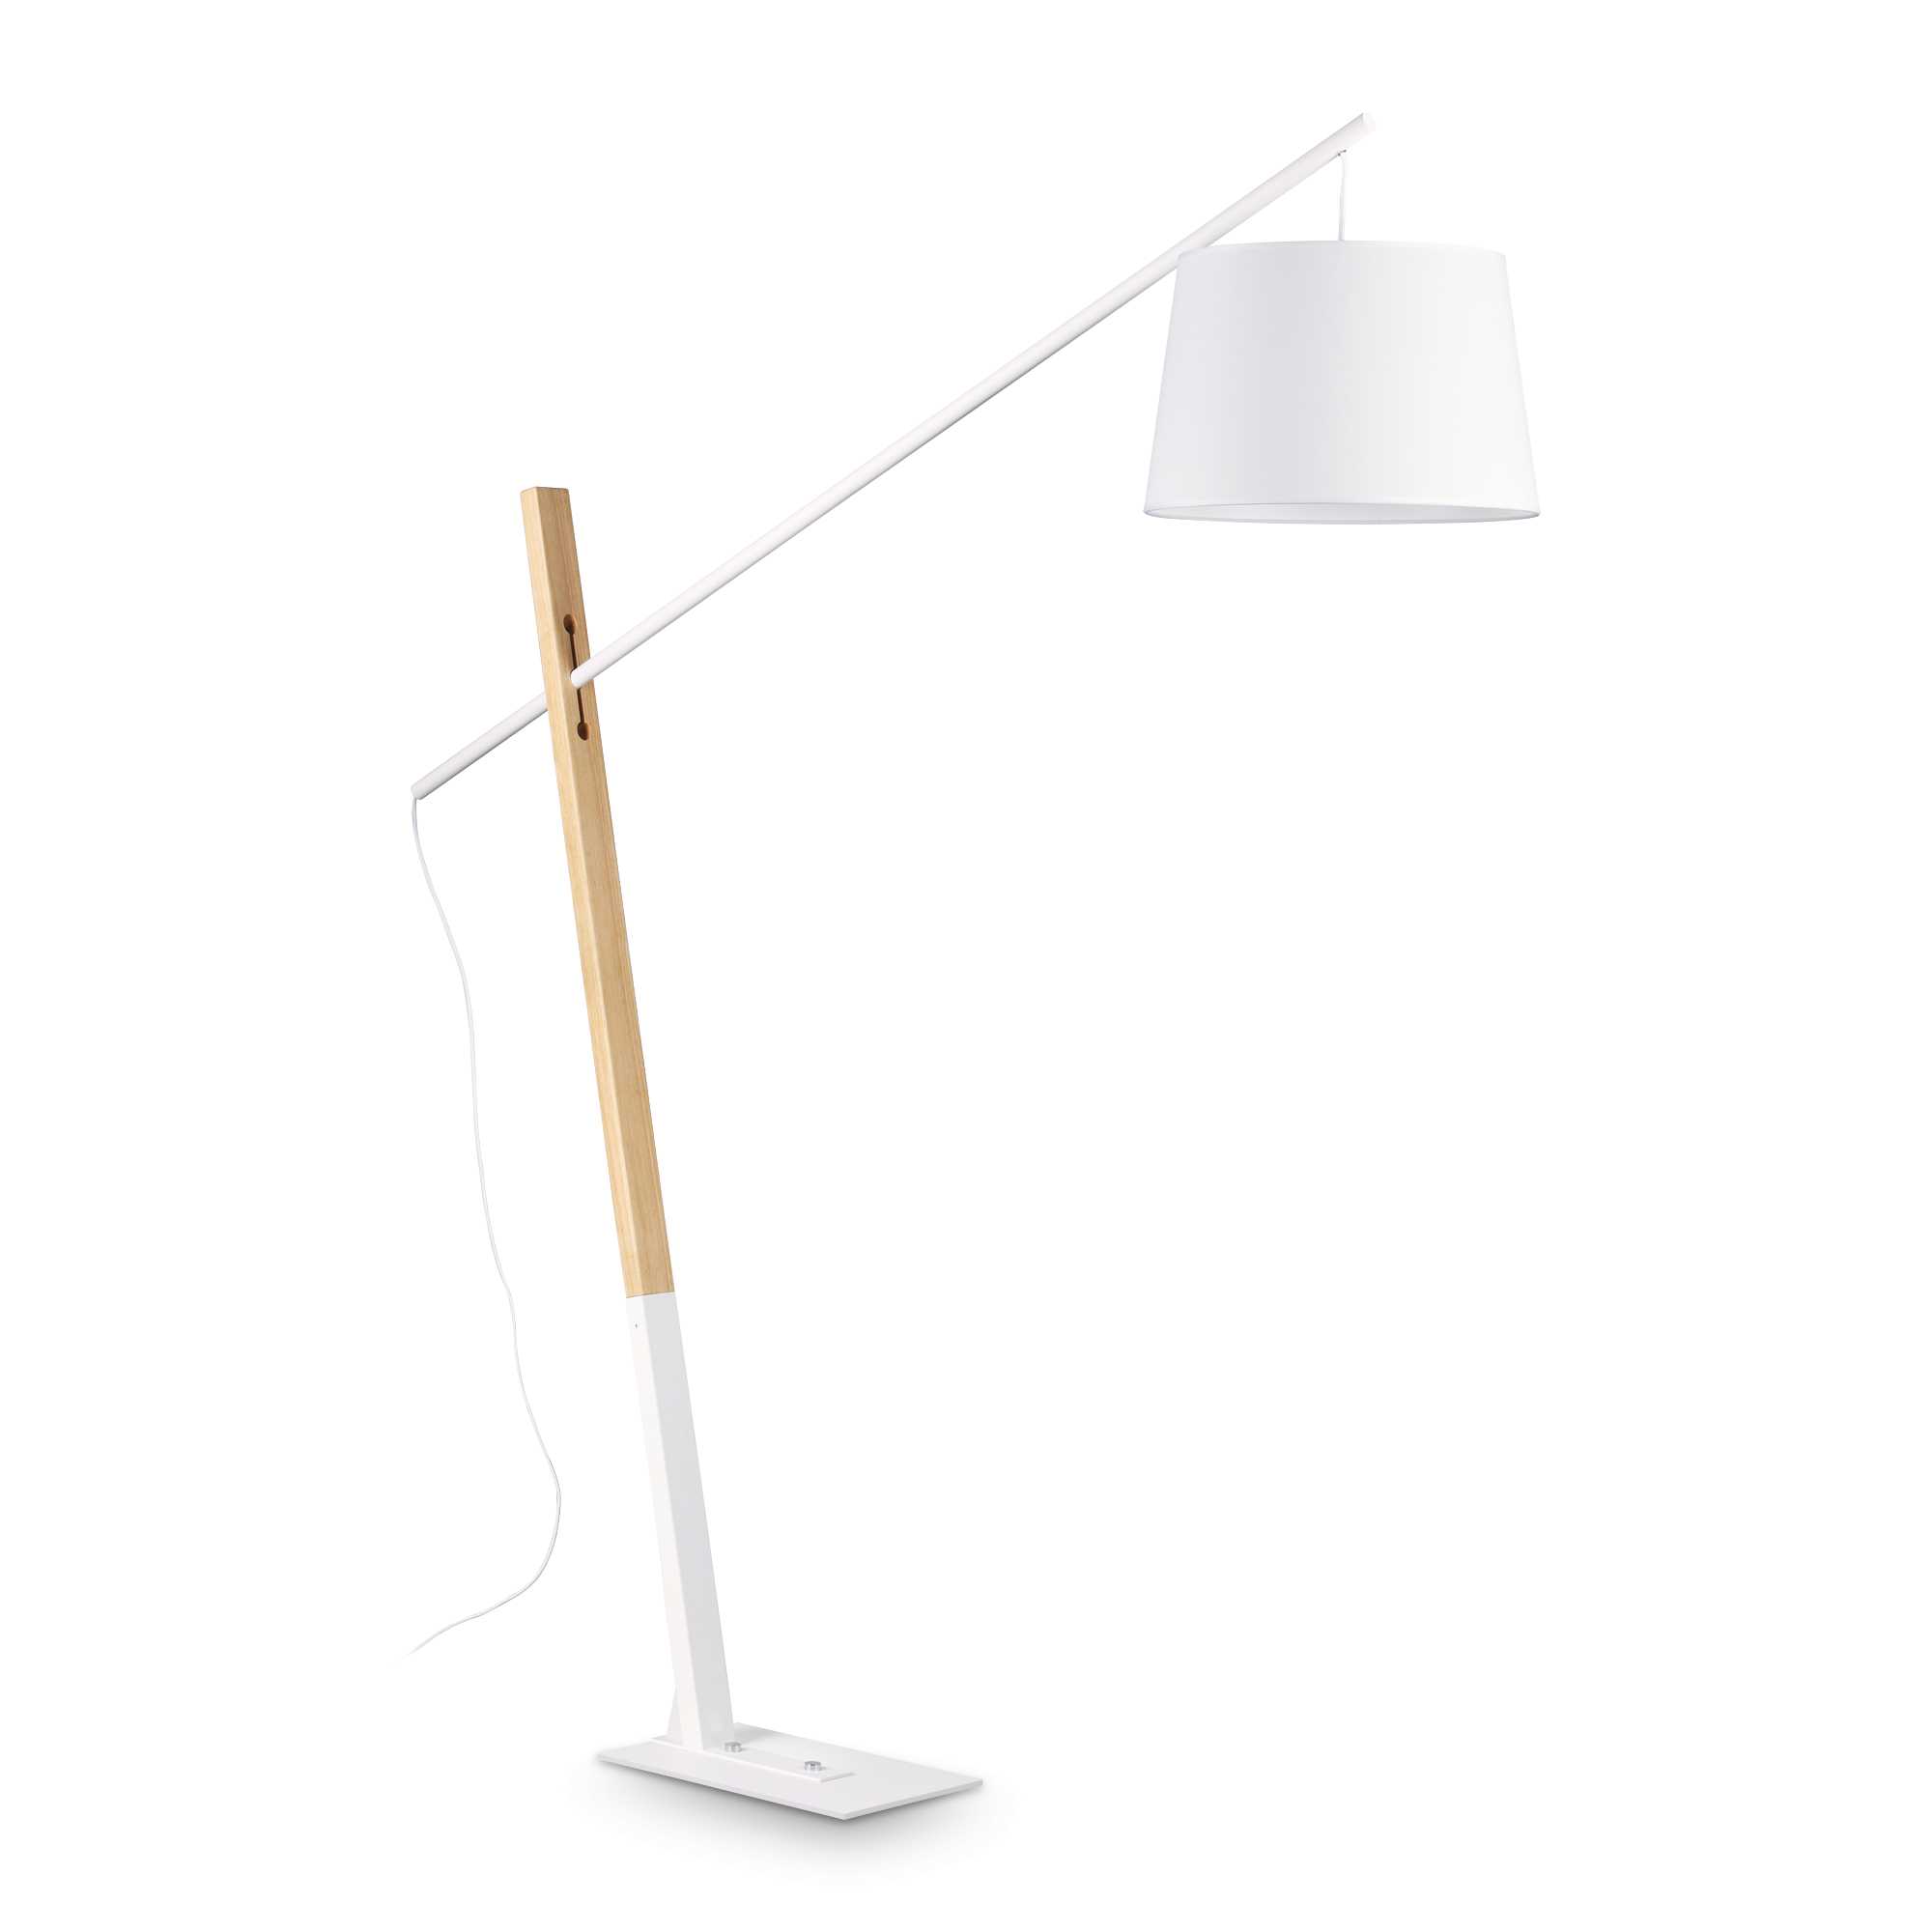 AD hotelska oprema Podna lampa Eminent pt1- Bijele boje slika proizvoda